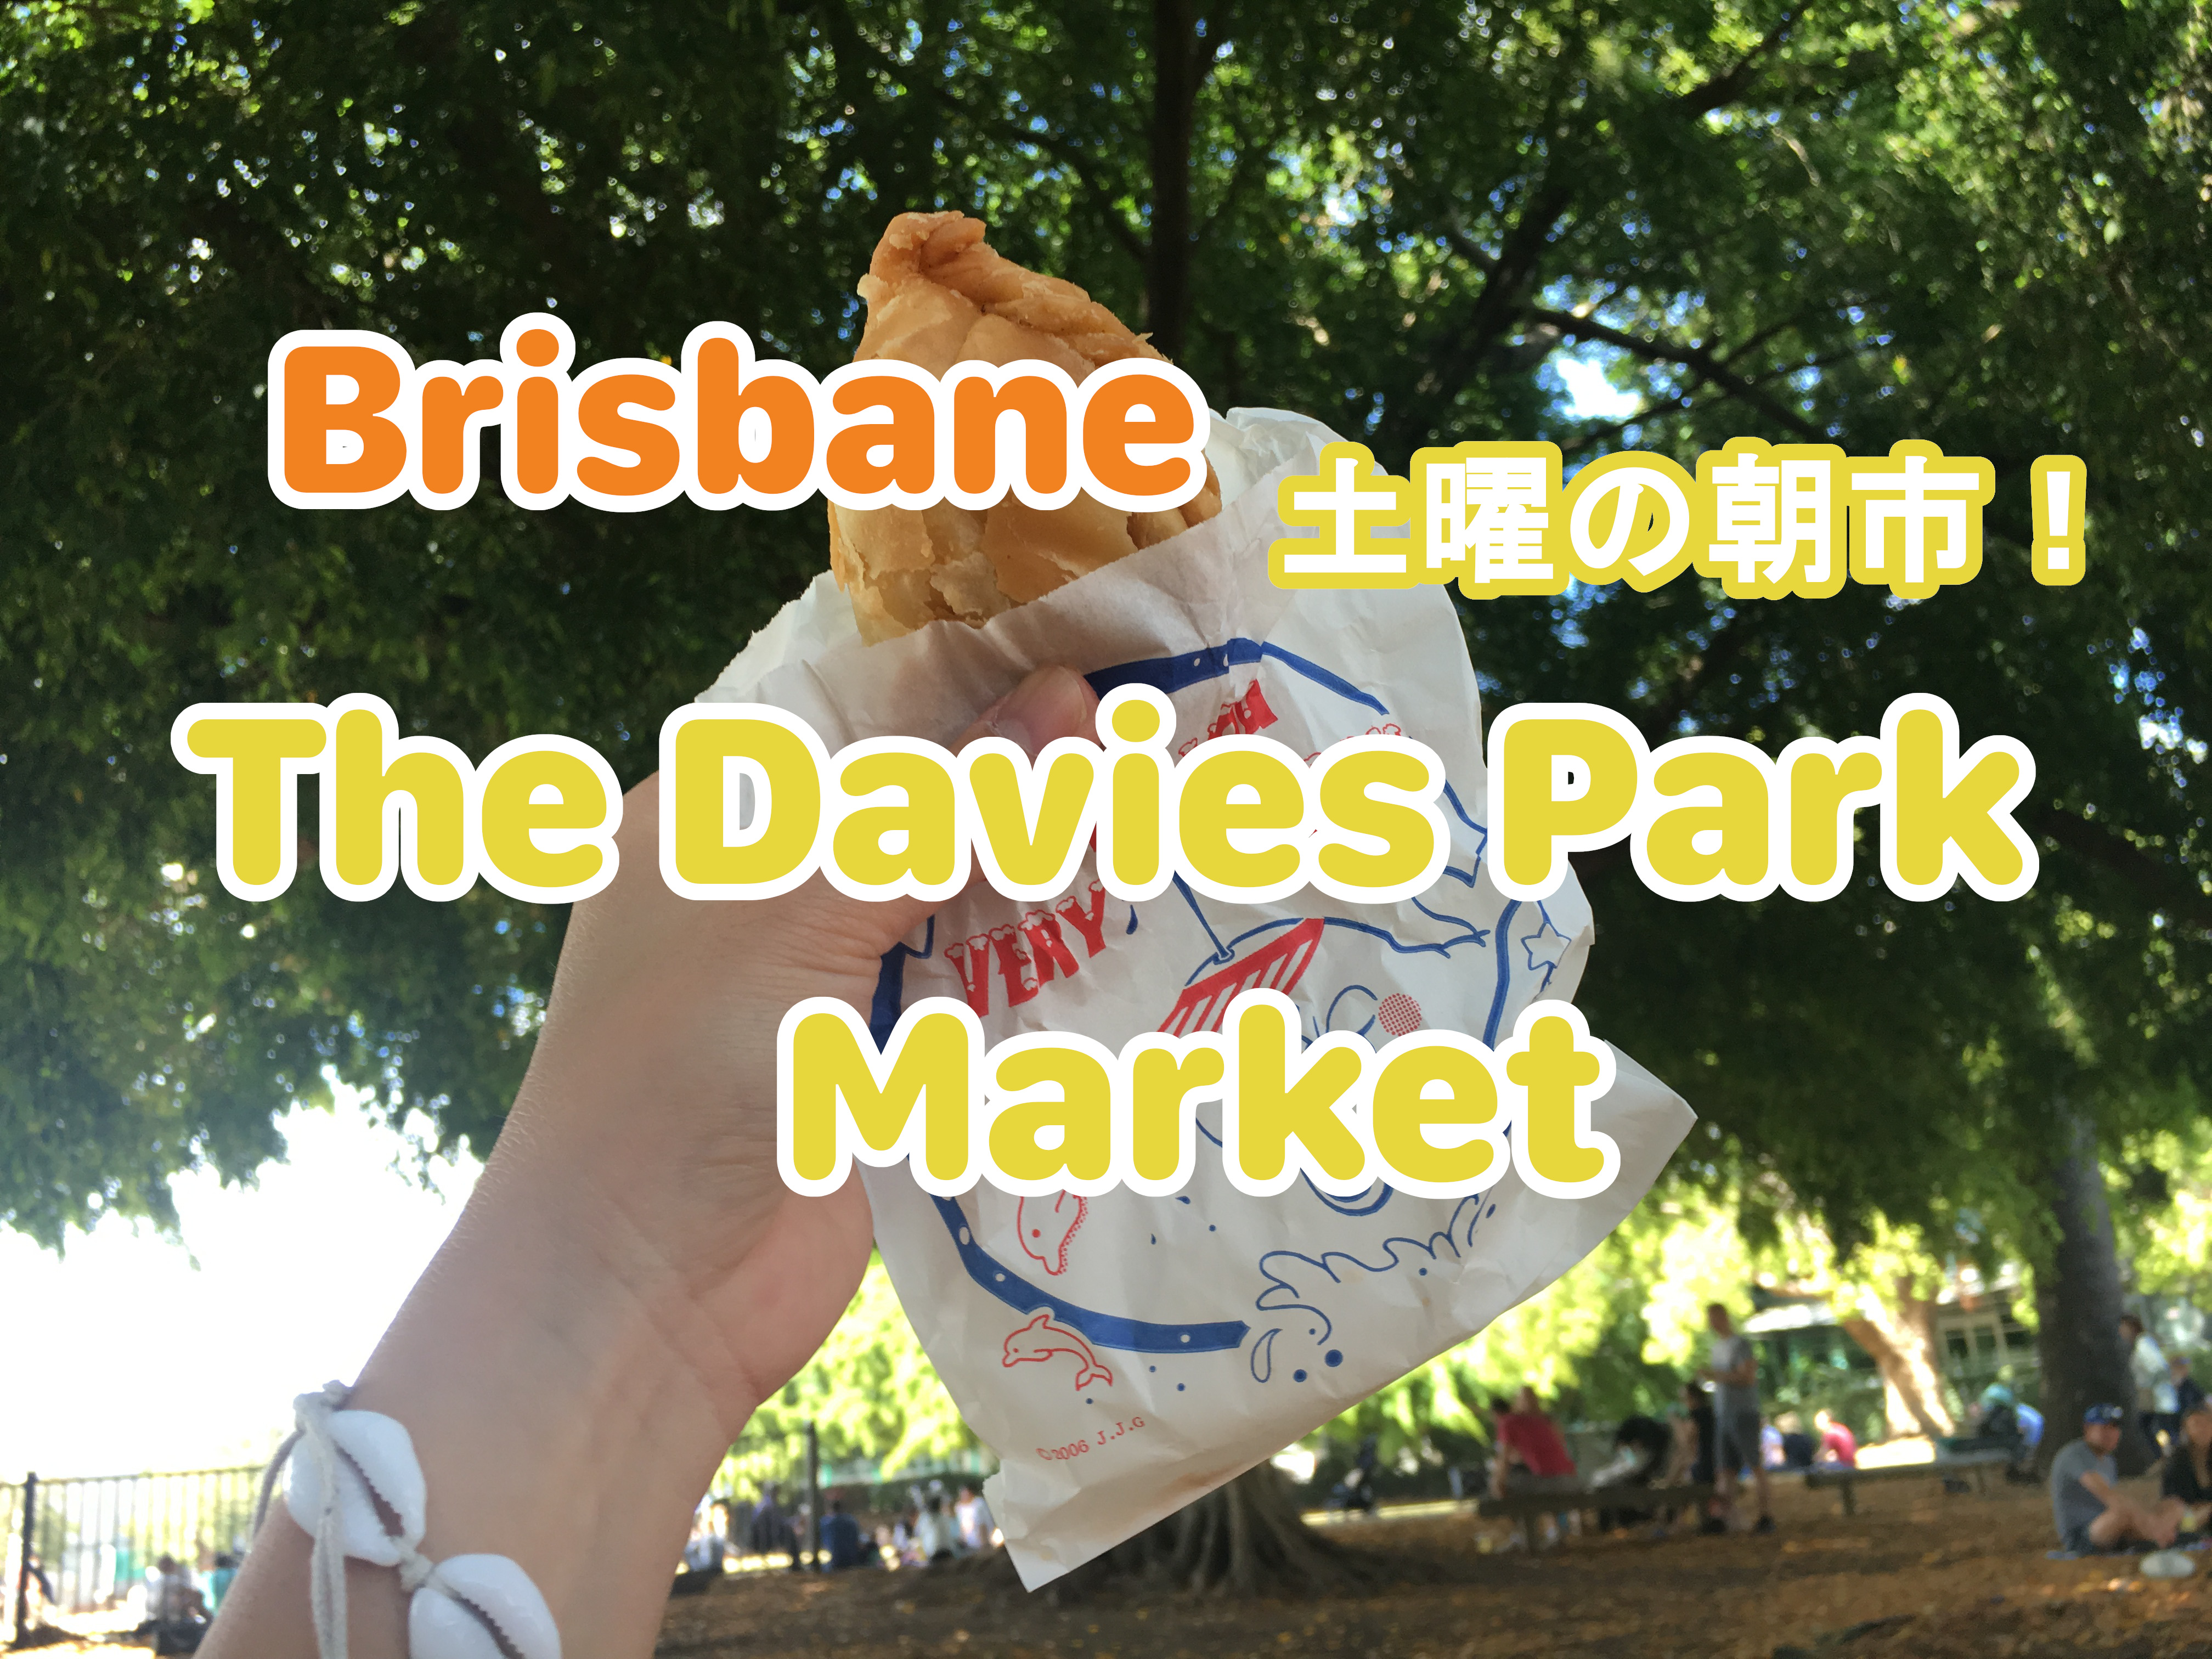 土曜の朝市the Davies park market !